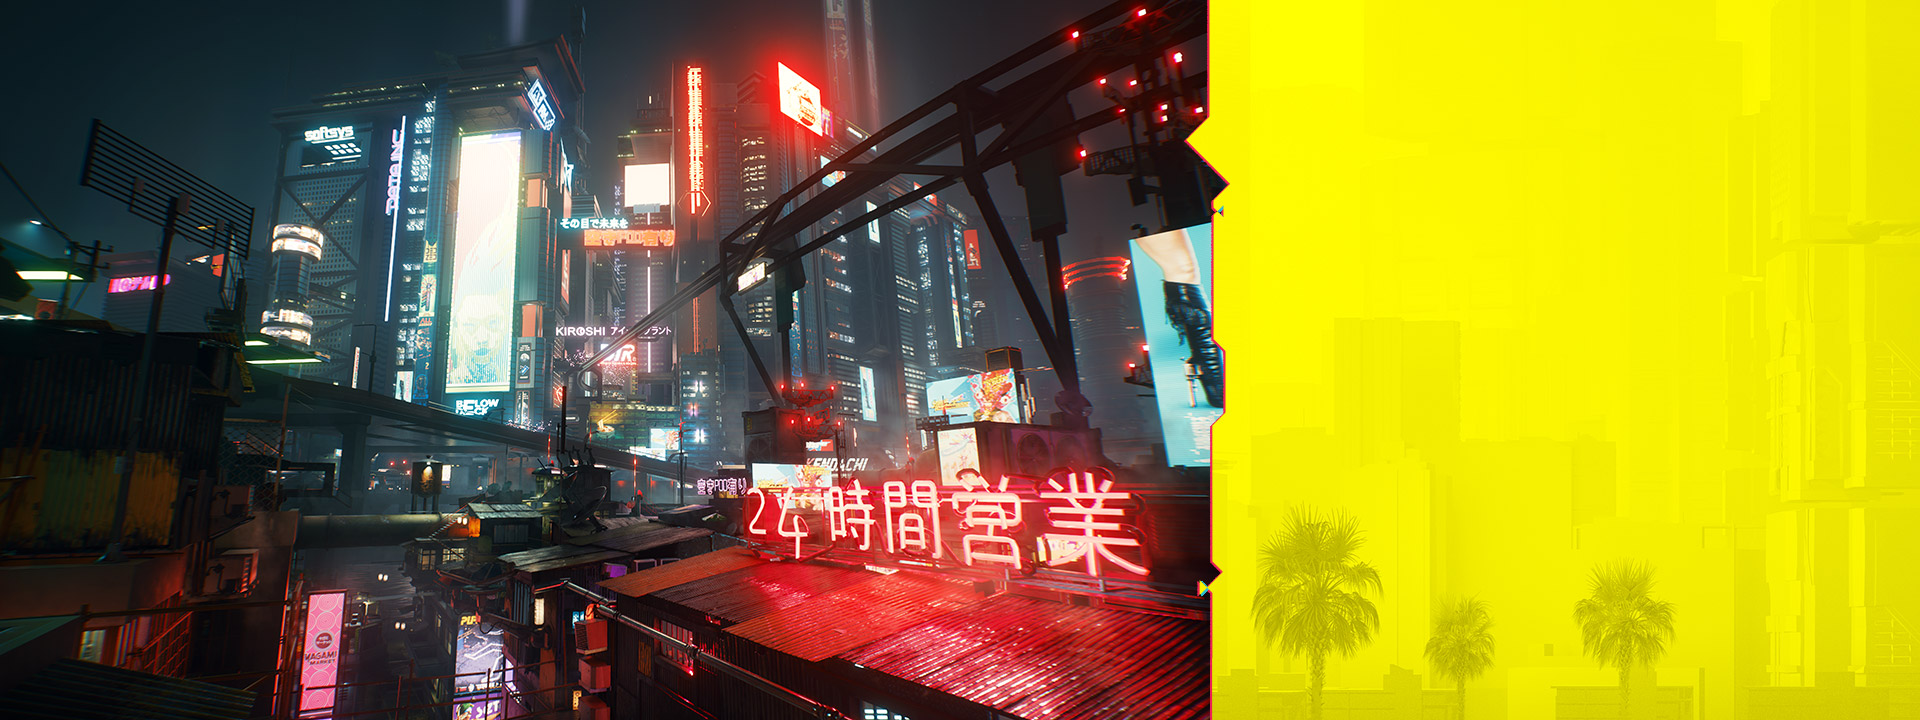 Los letreros de neón de Night City brillan contra un paisaje urbano nebuloso por la noche.